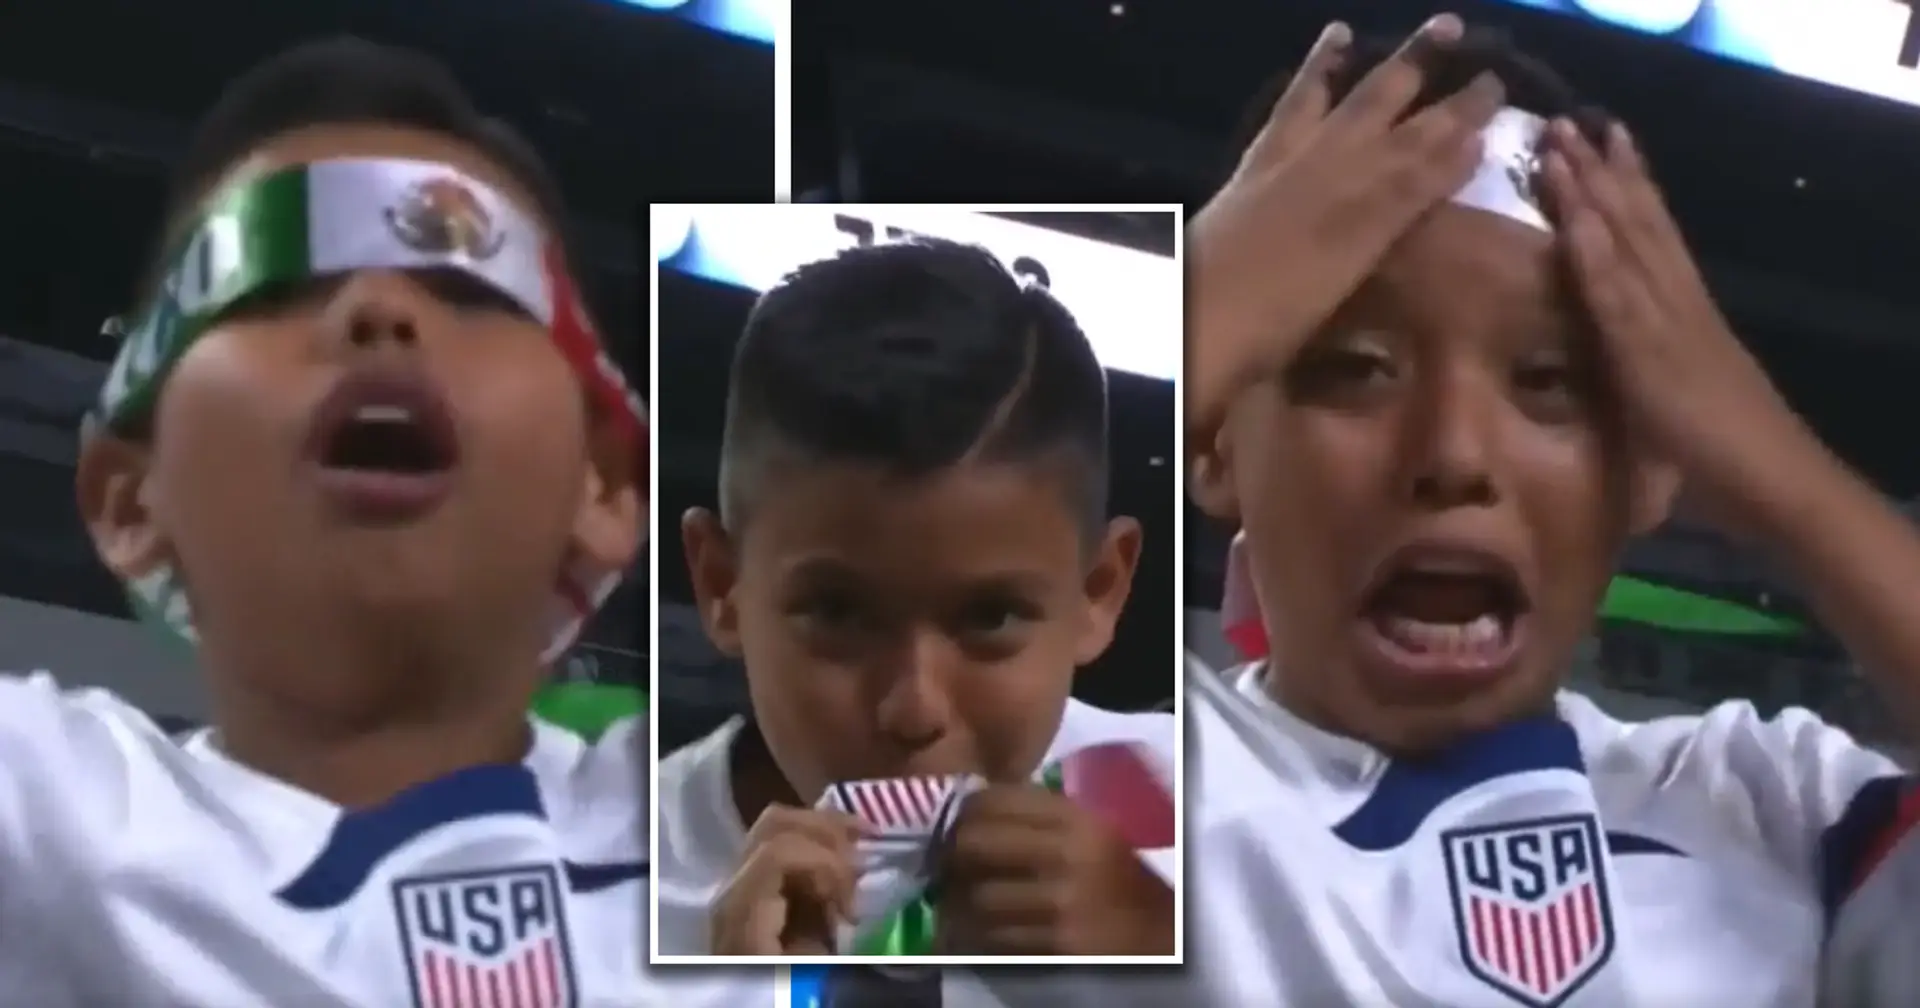 'Texas circa 1845': Fans react as kid throws off his Mexican headband & kisses USA badge